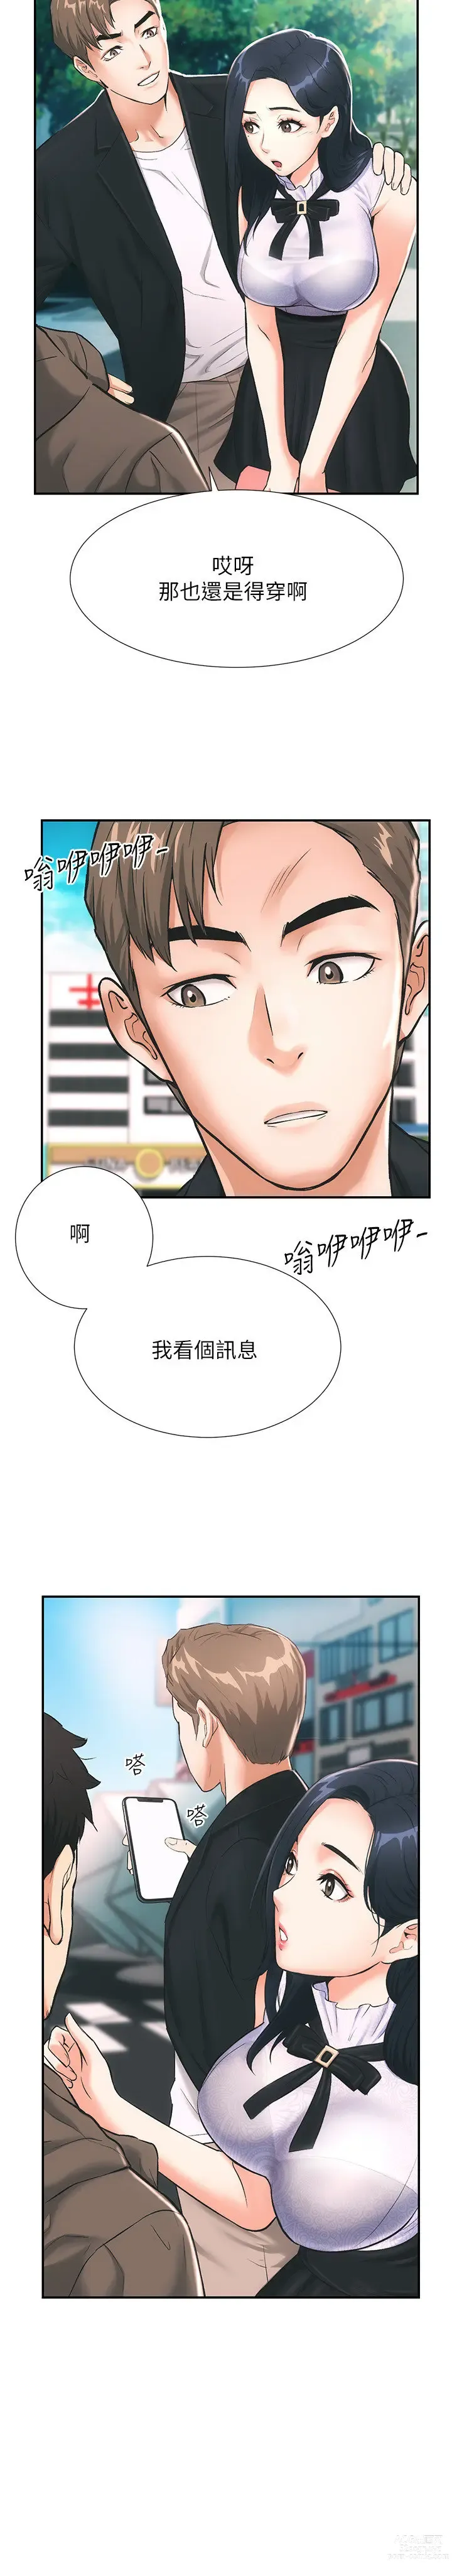 Page 25 of manga 弟妹诊撩室